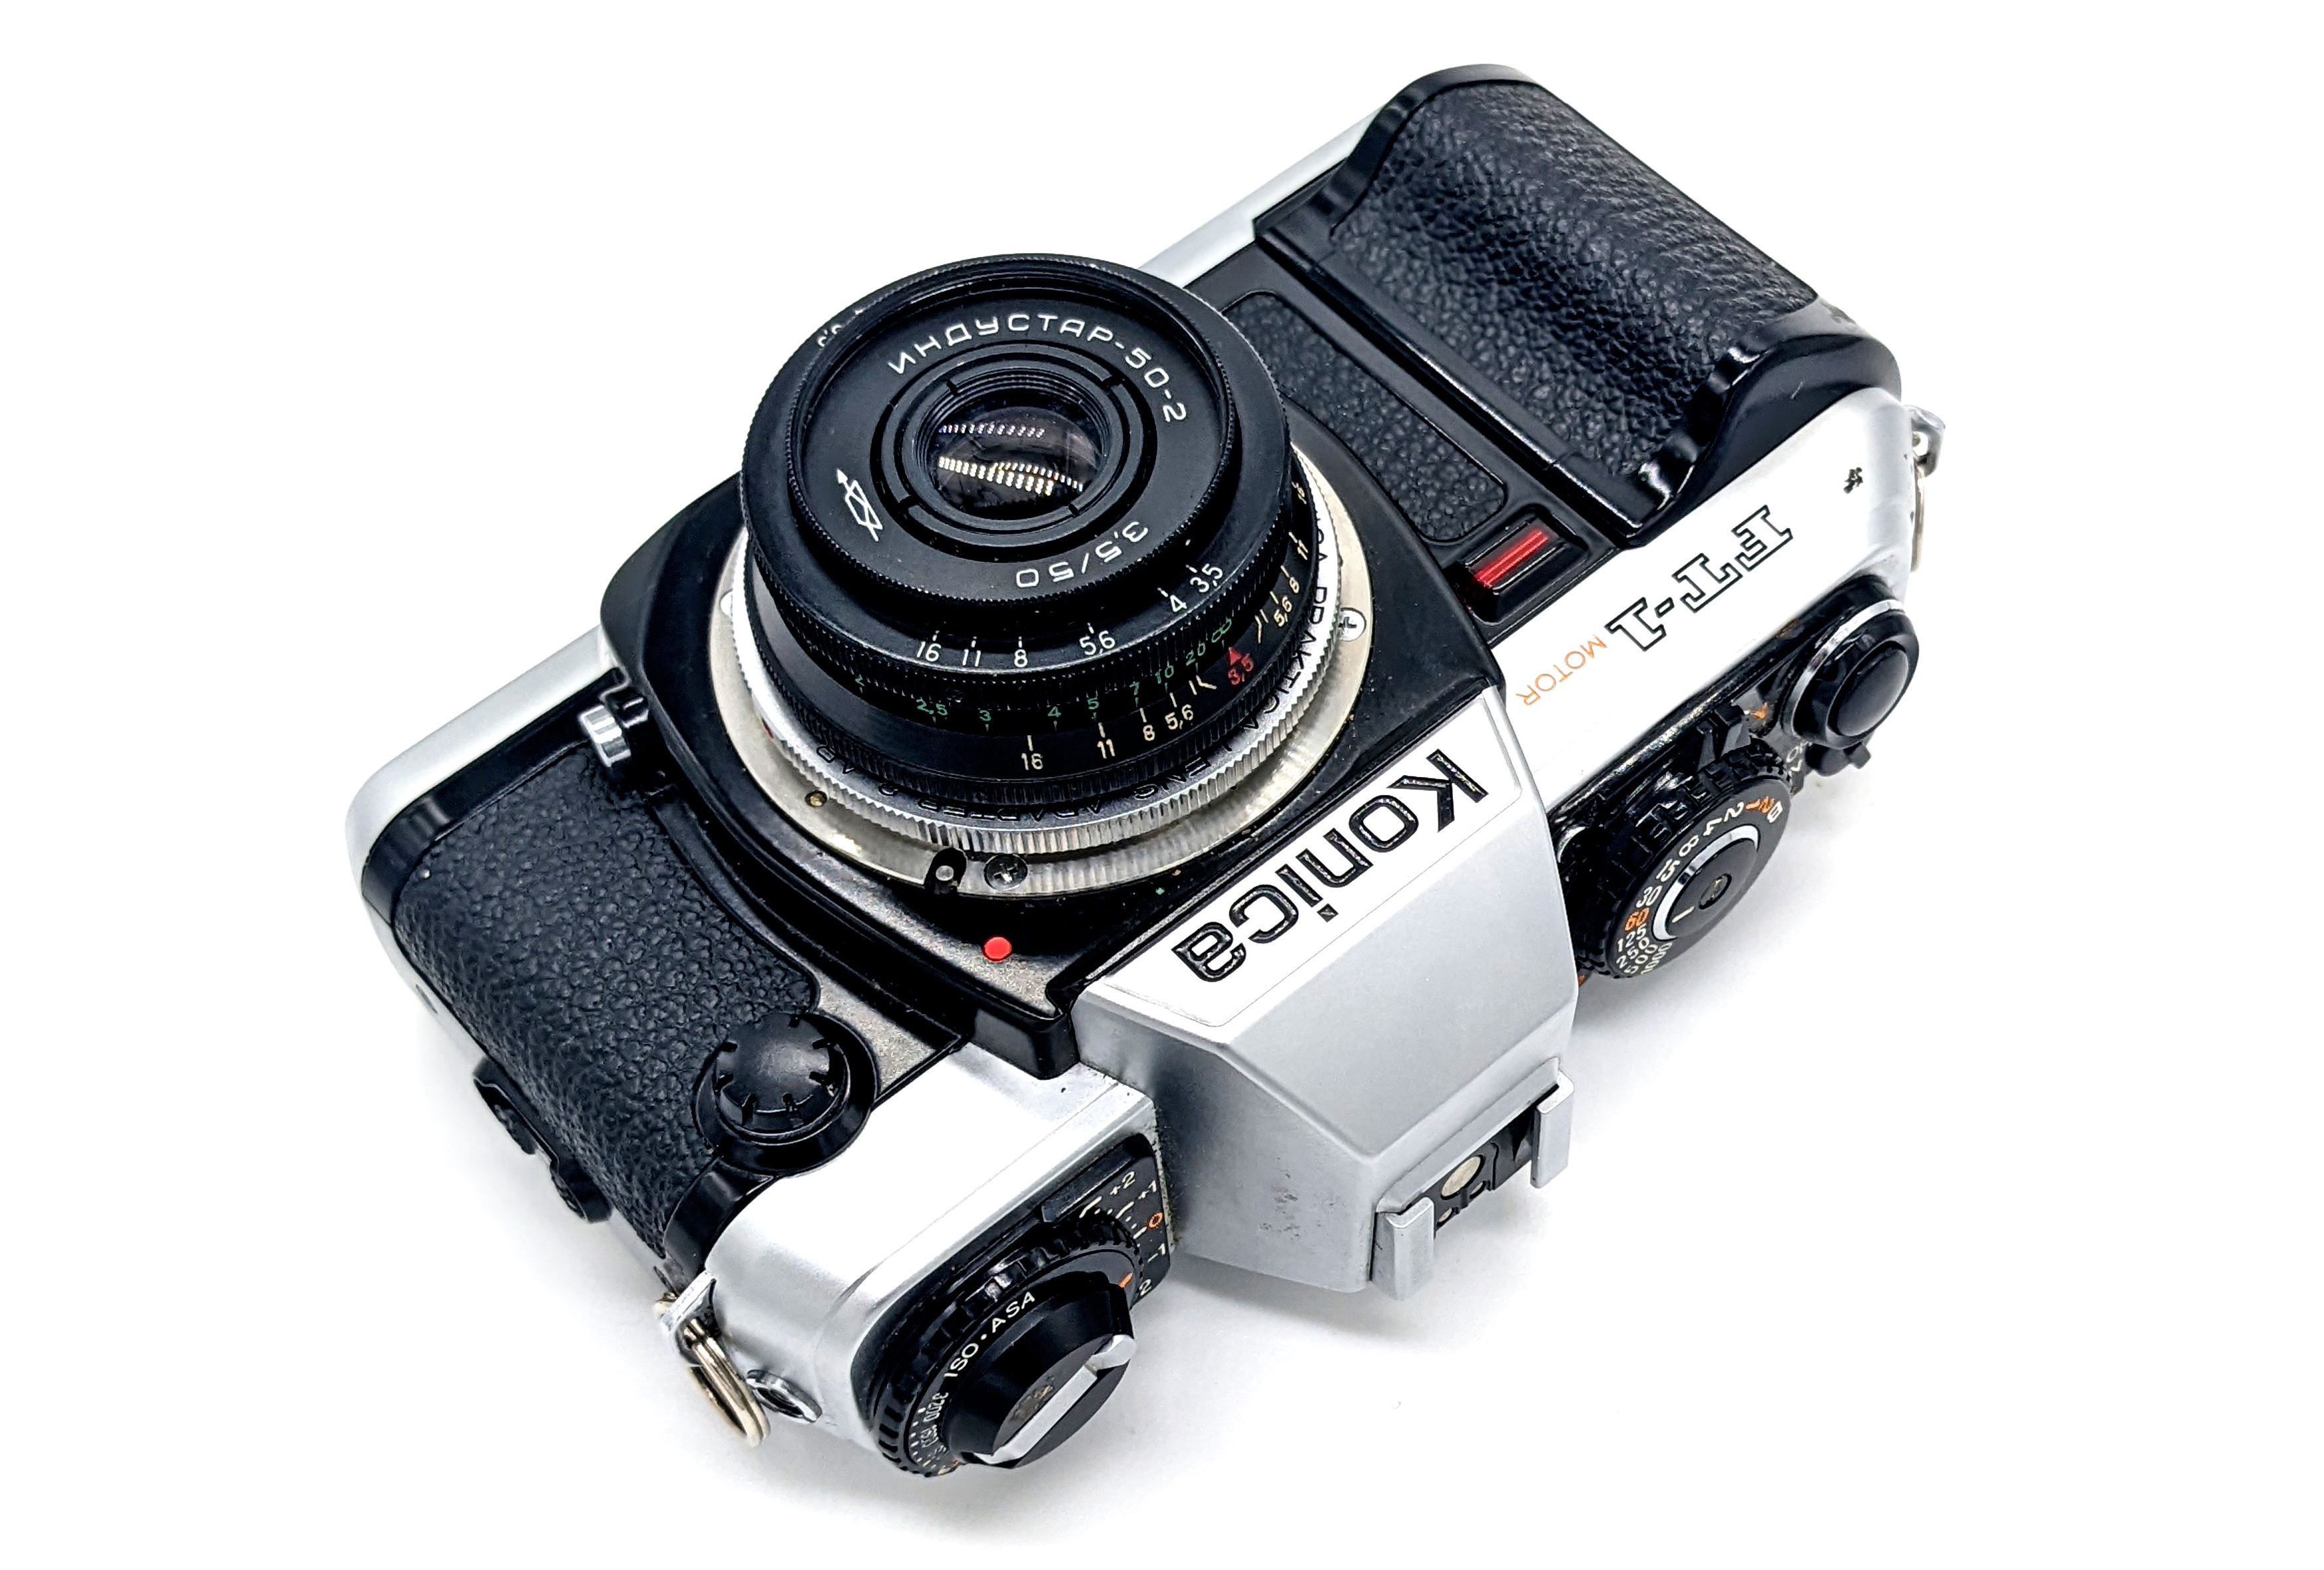 Cosina CT-4 35mm Film Camera w/ 3 Lenses, Accessories & Case